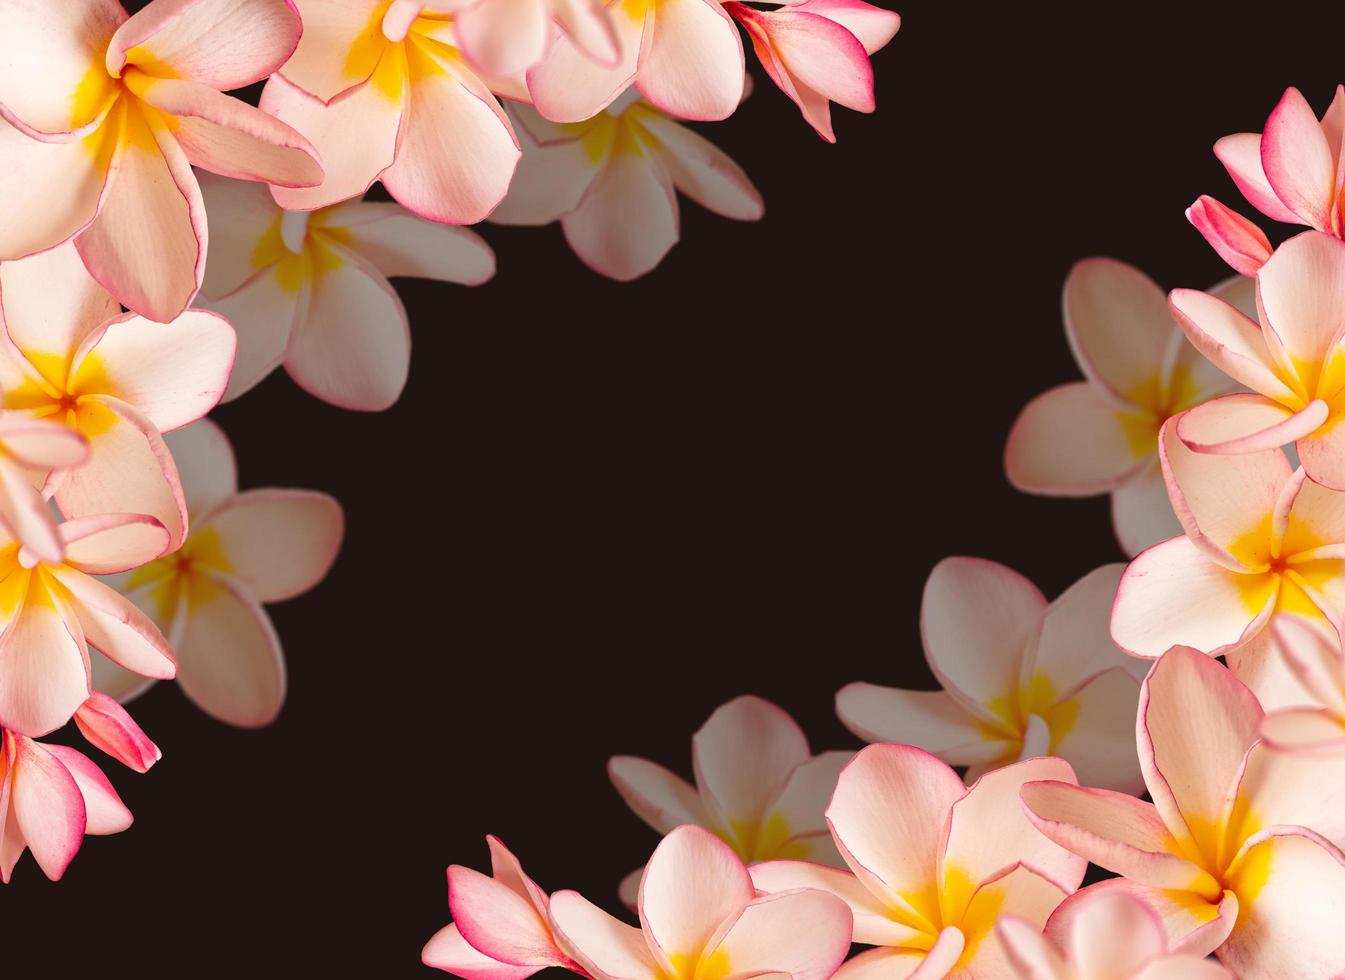 cadre de fleurs, fleur de frangipanier rose et espace de copie. photo